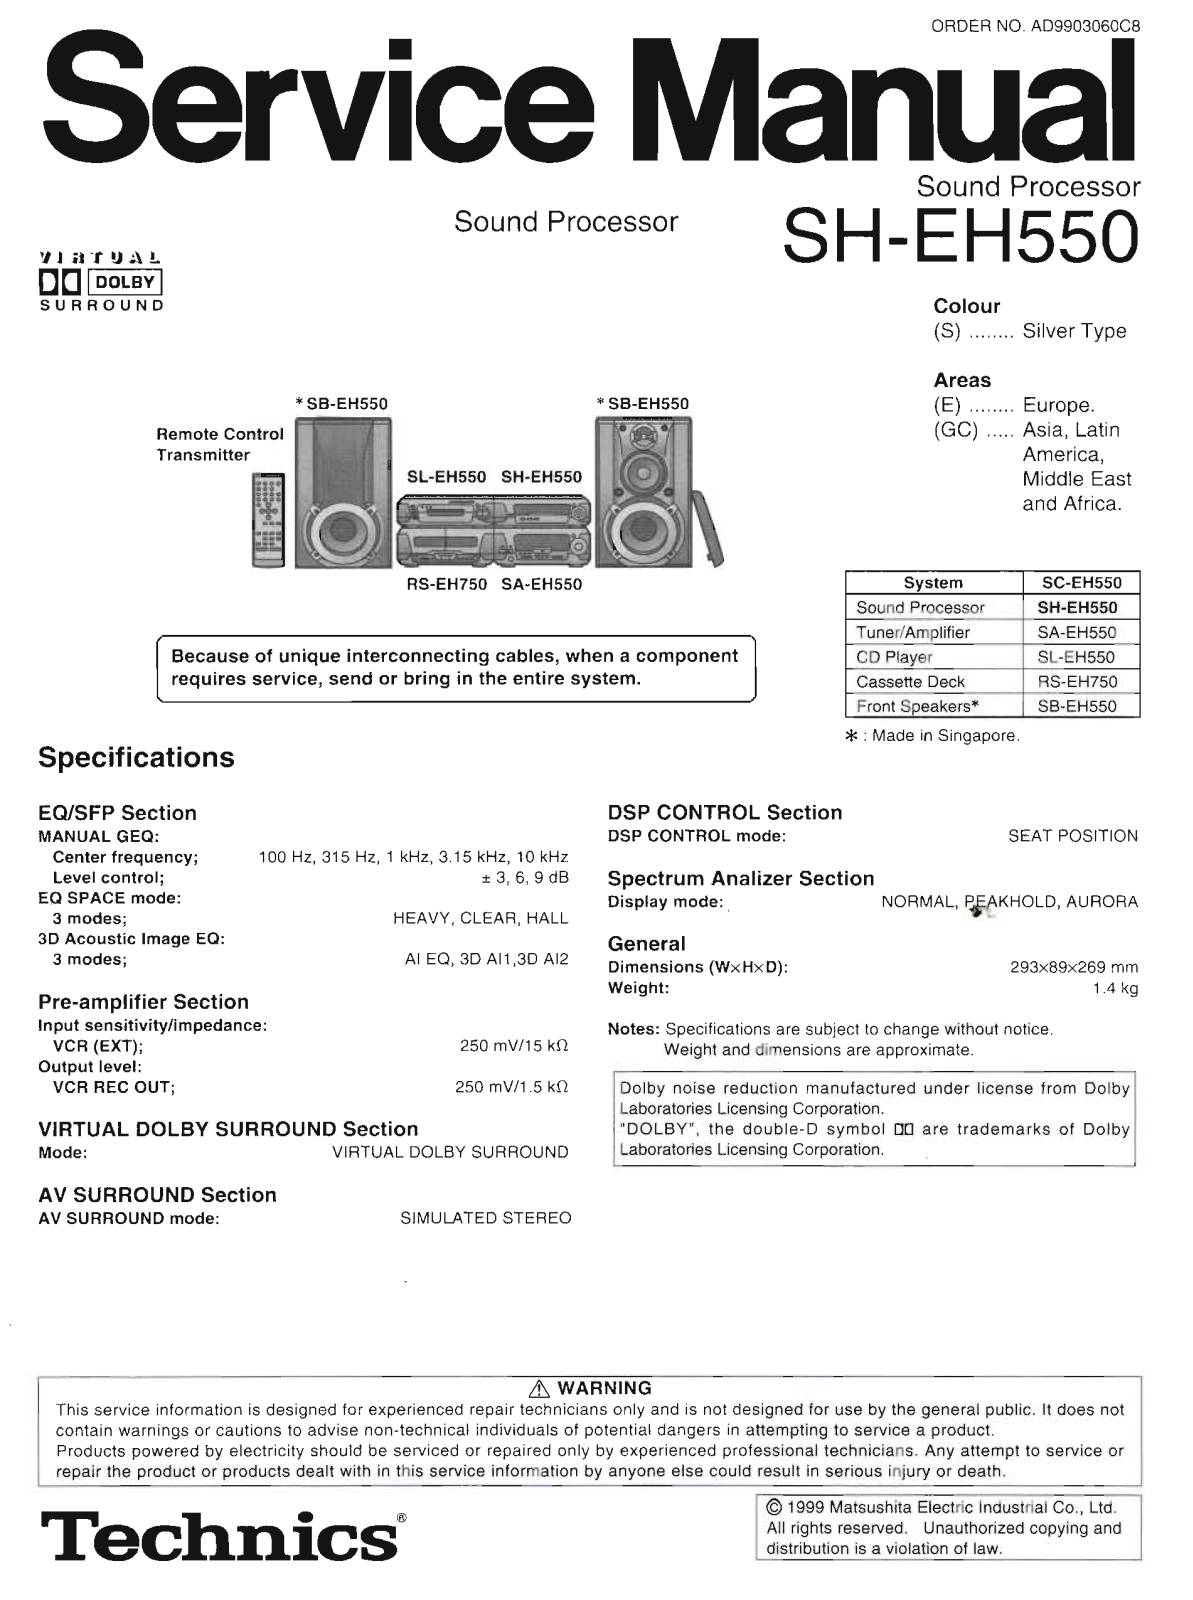 Technics SA-EH550